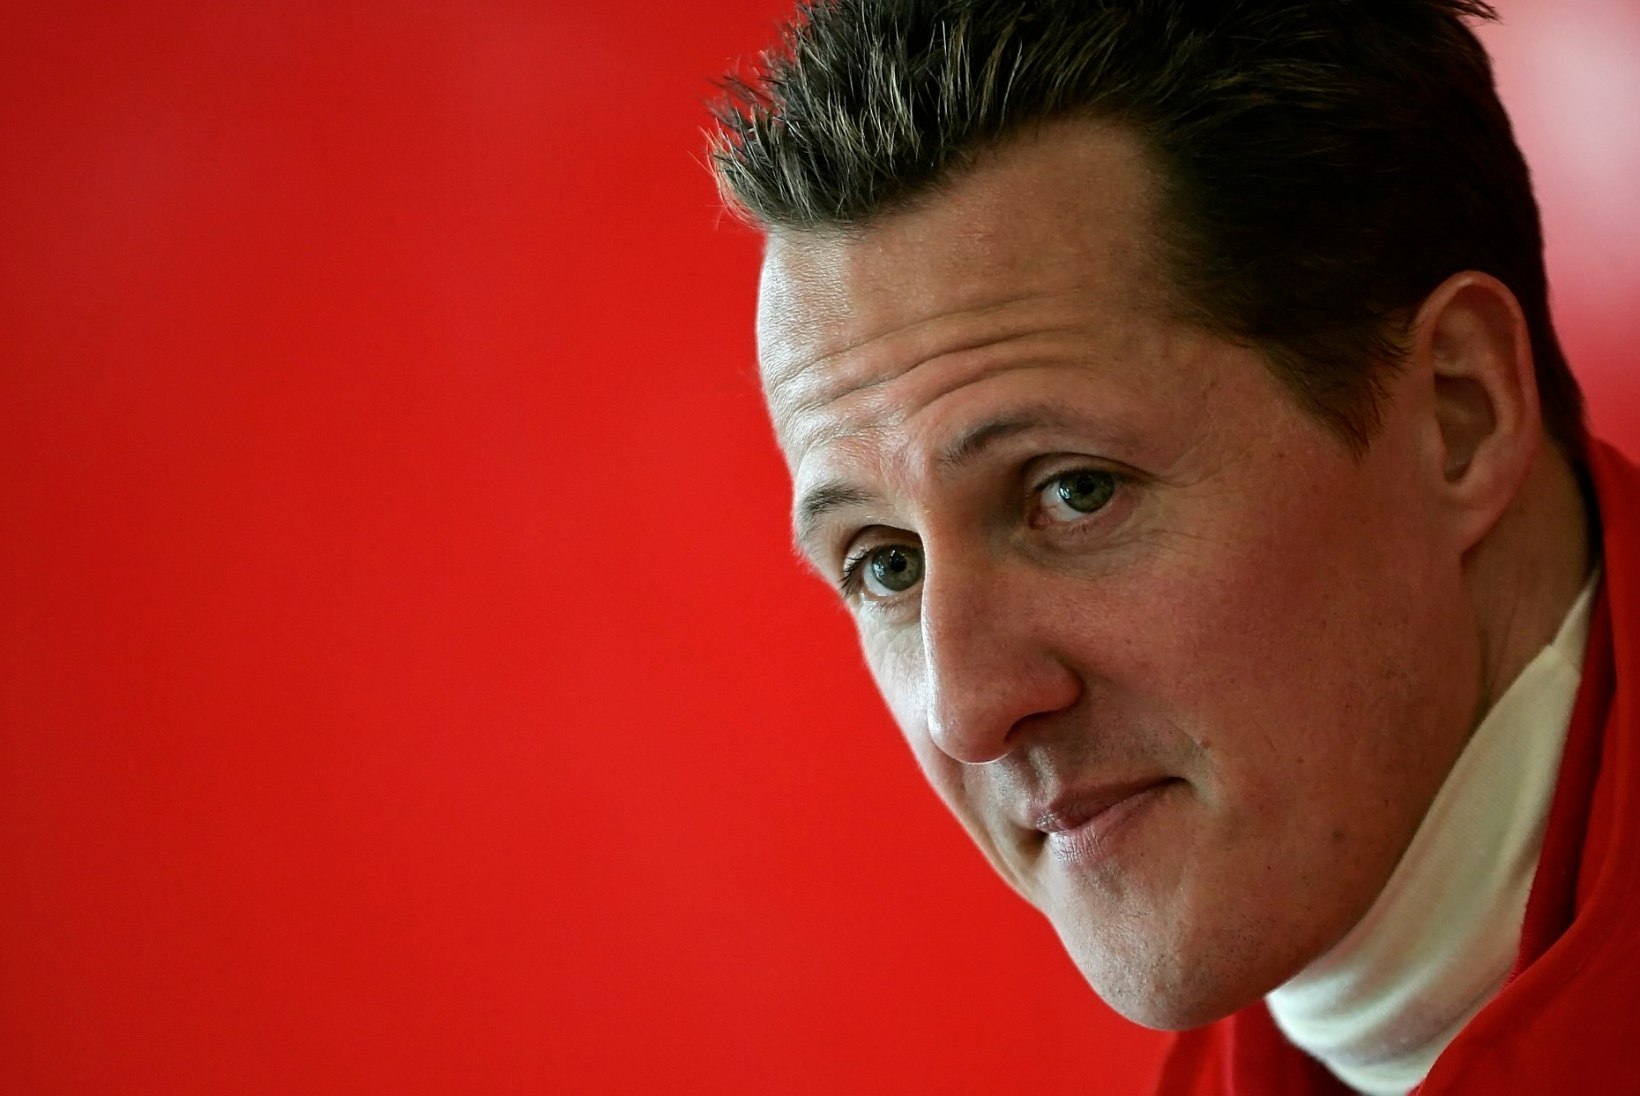 Jõuline avaldus Schumacheri loos: "Fännid väärivad tõde, olgu see kui valus tahes."